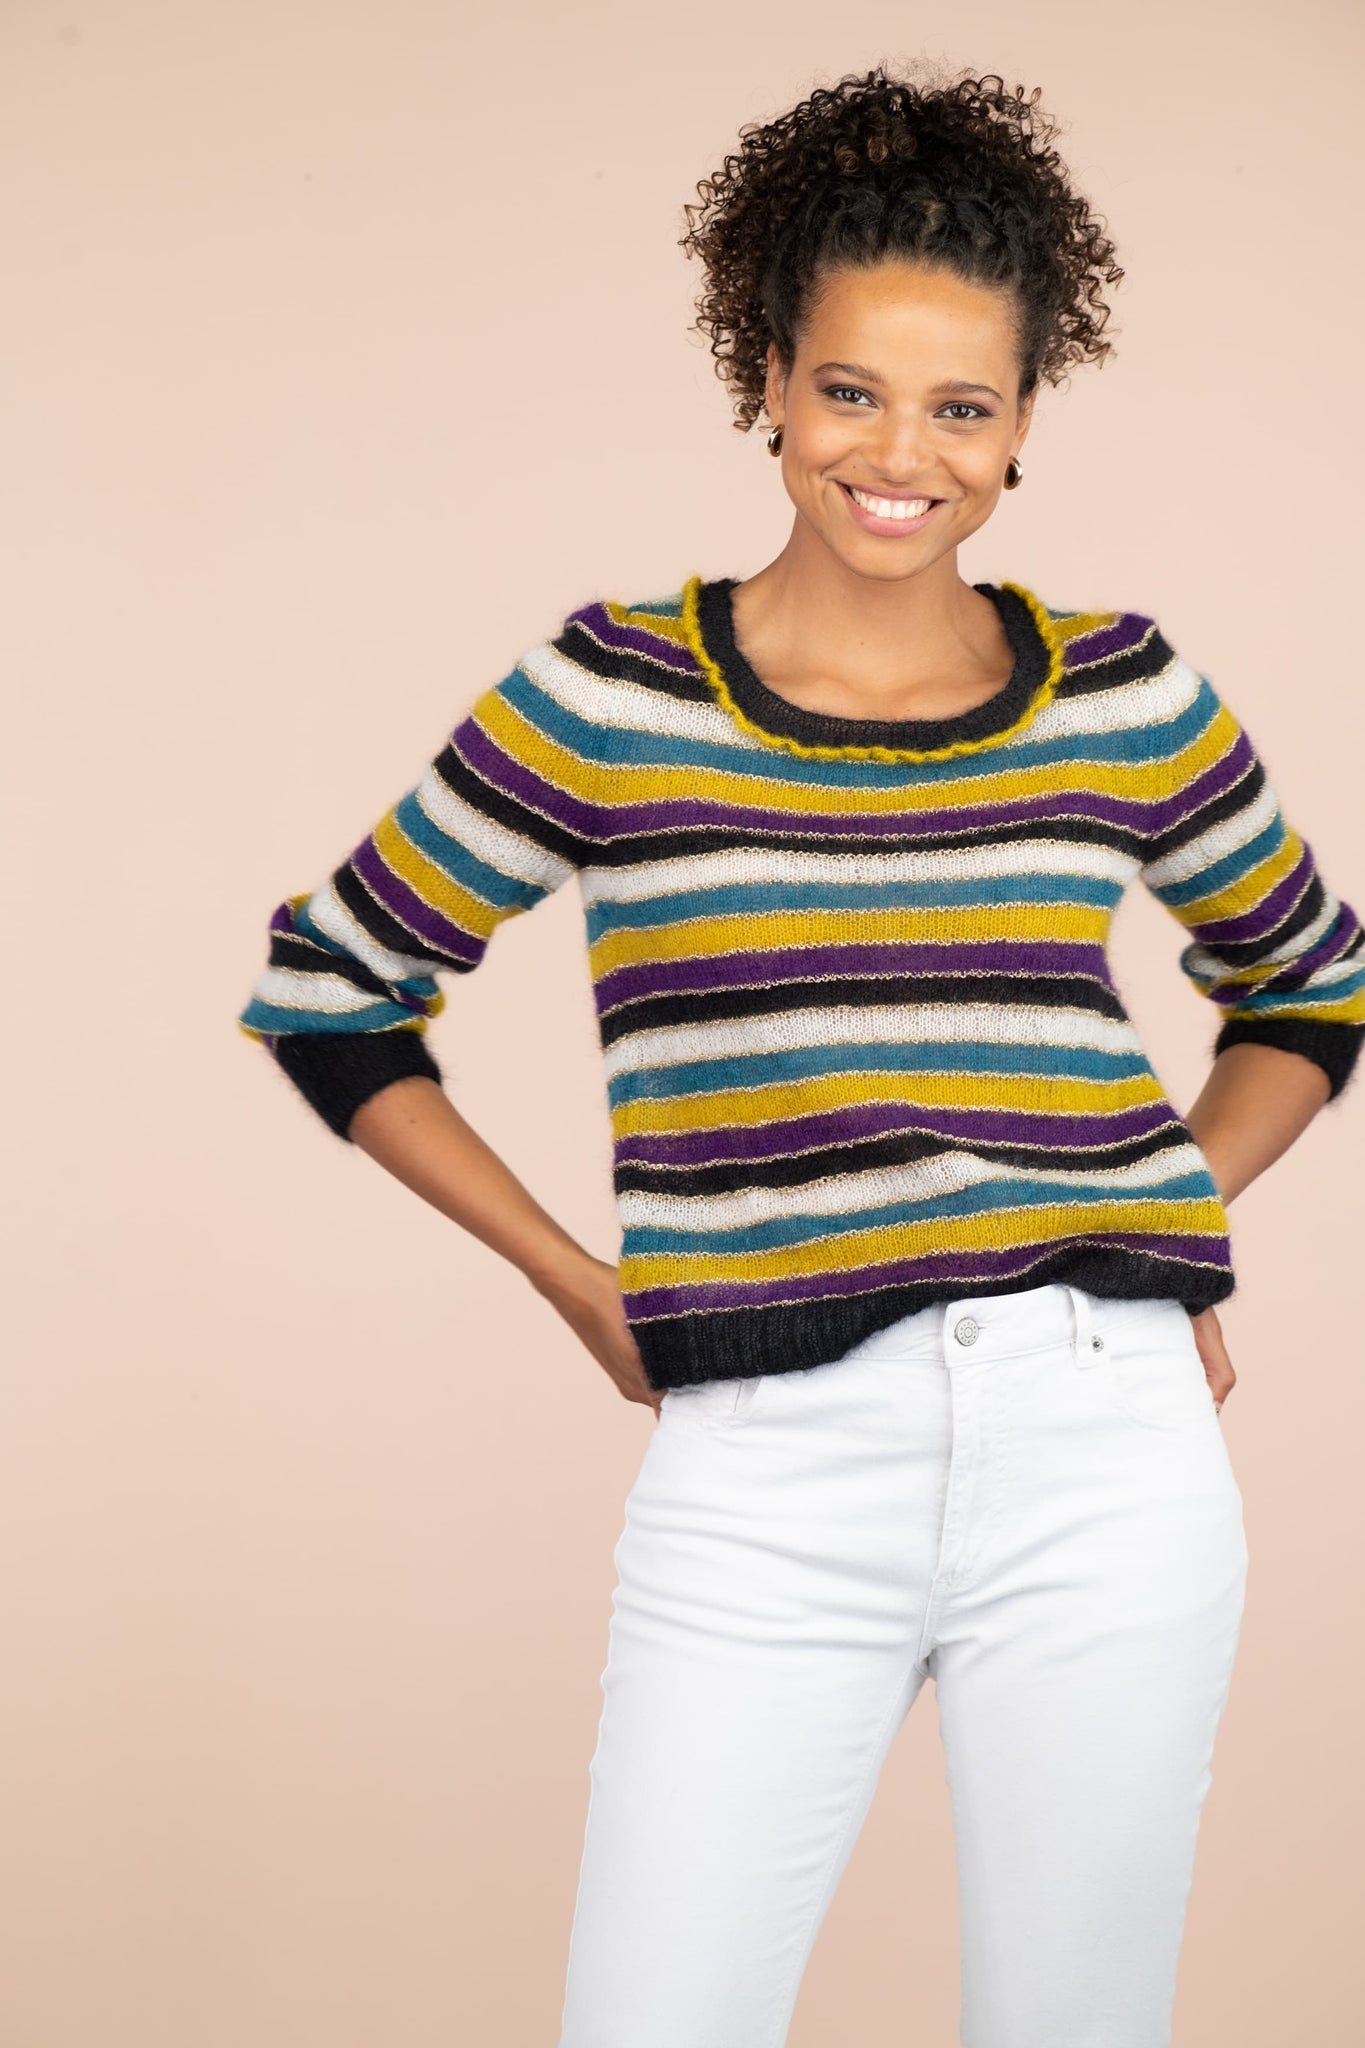 Pull Peuplier à tricoter : rayures et confort pour bébé – Anny Blatt